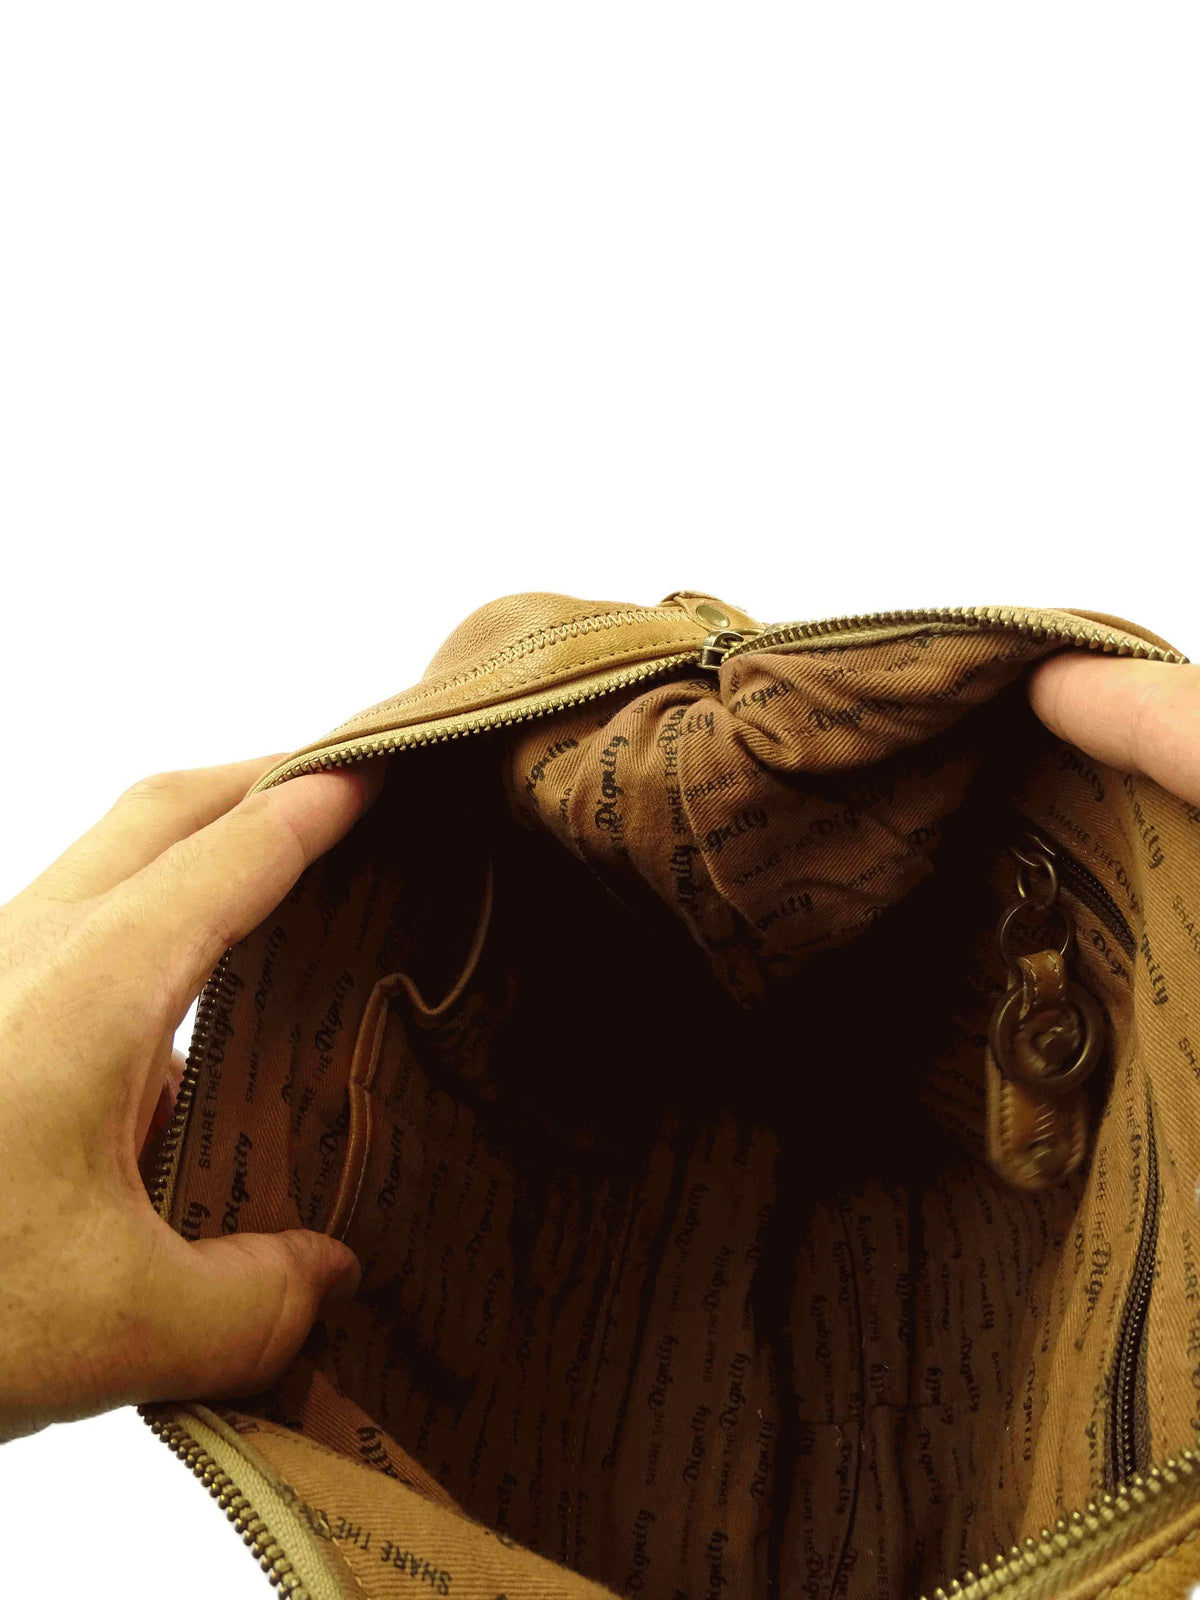 Sharethedignity Brown Leather Shoulder Bag